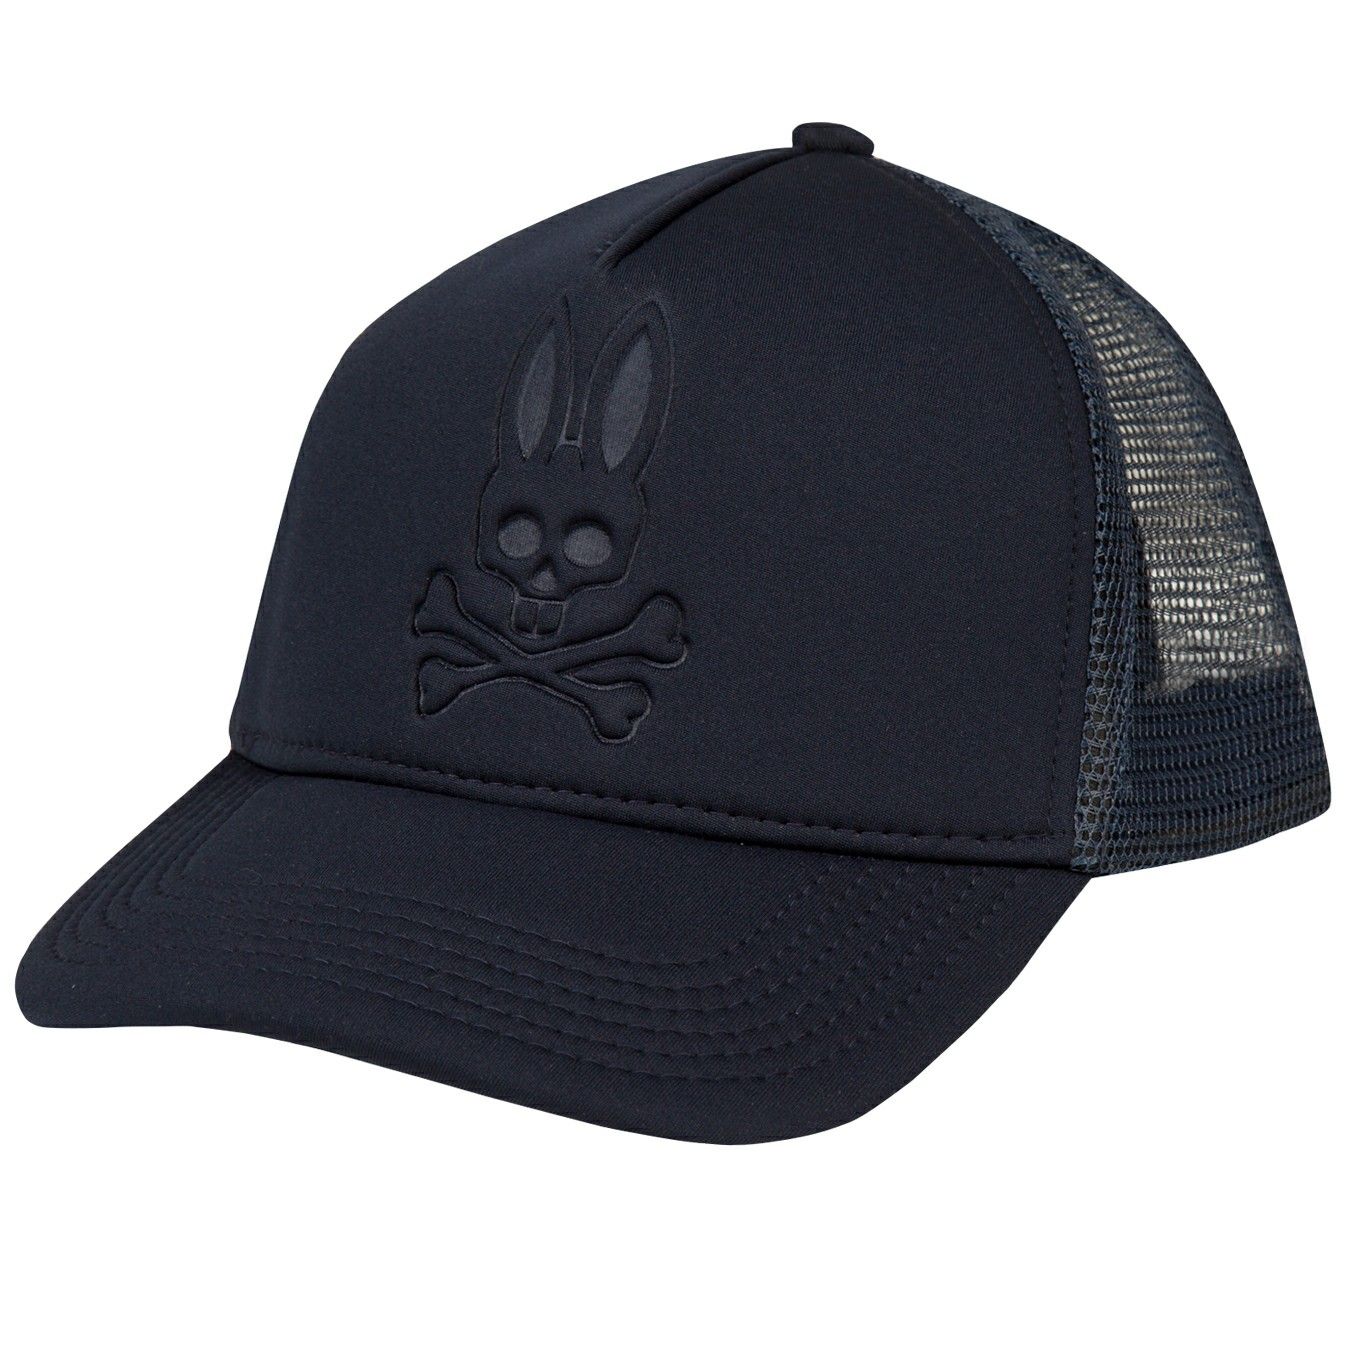 Psycho Bunny hat